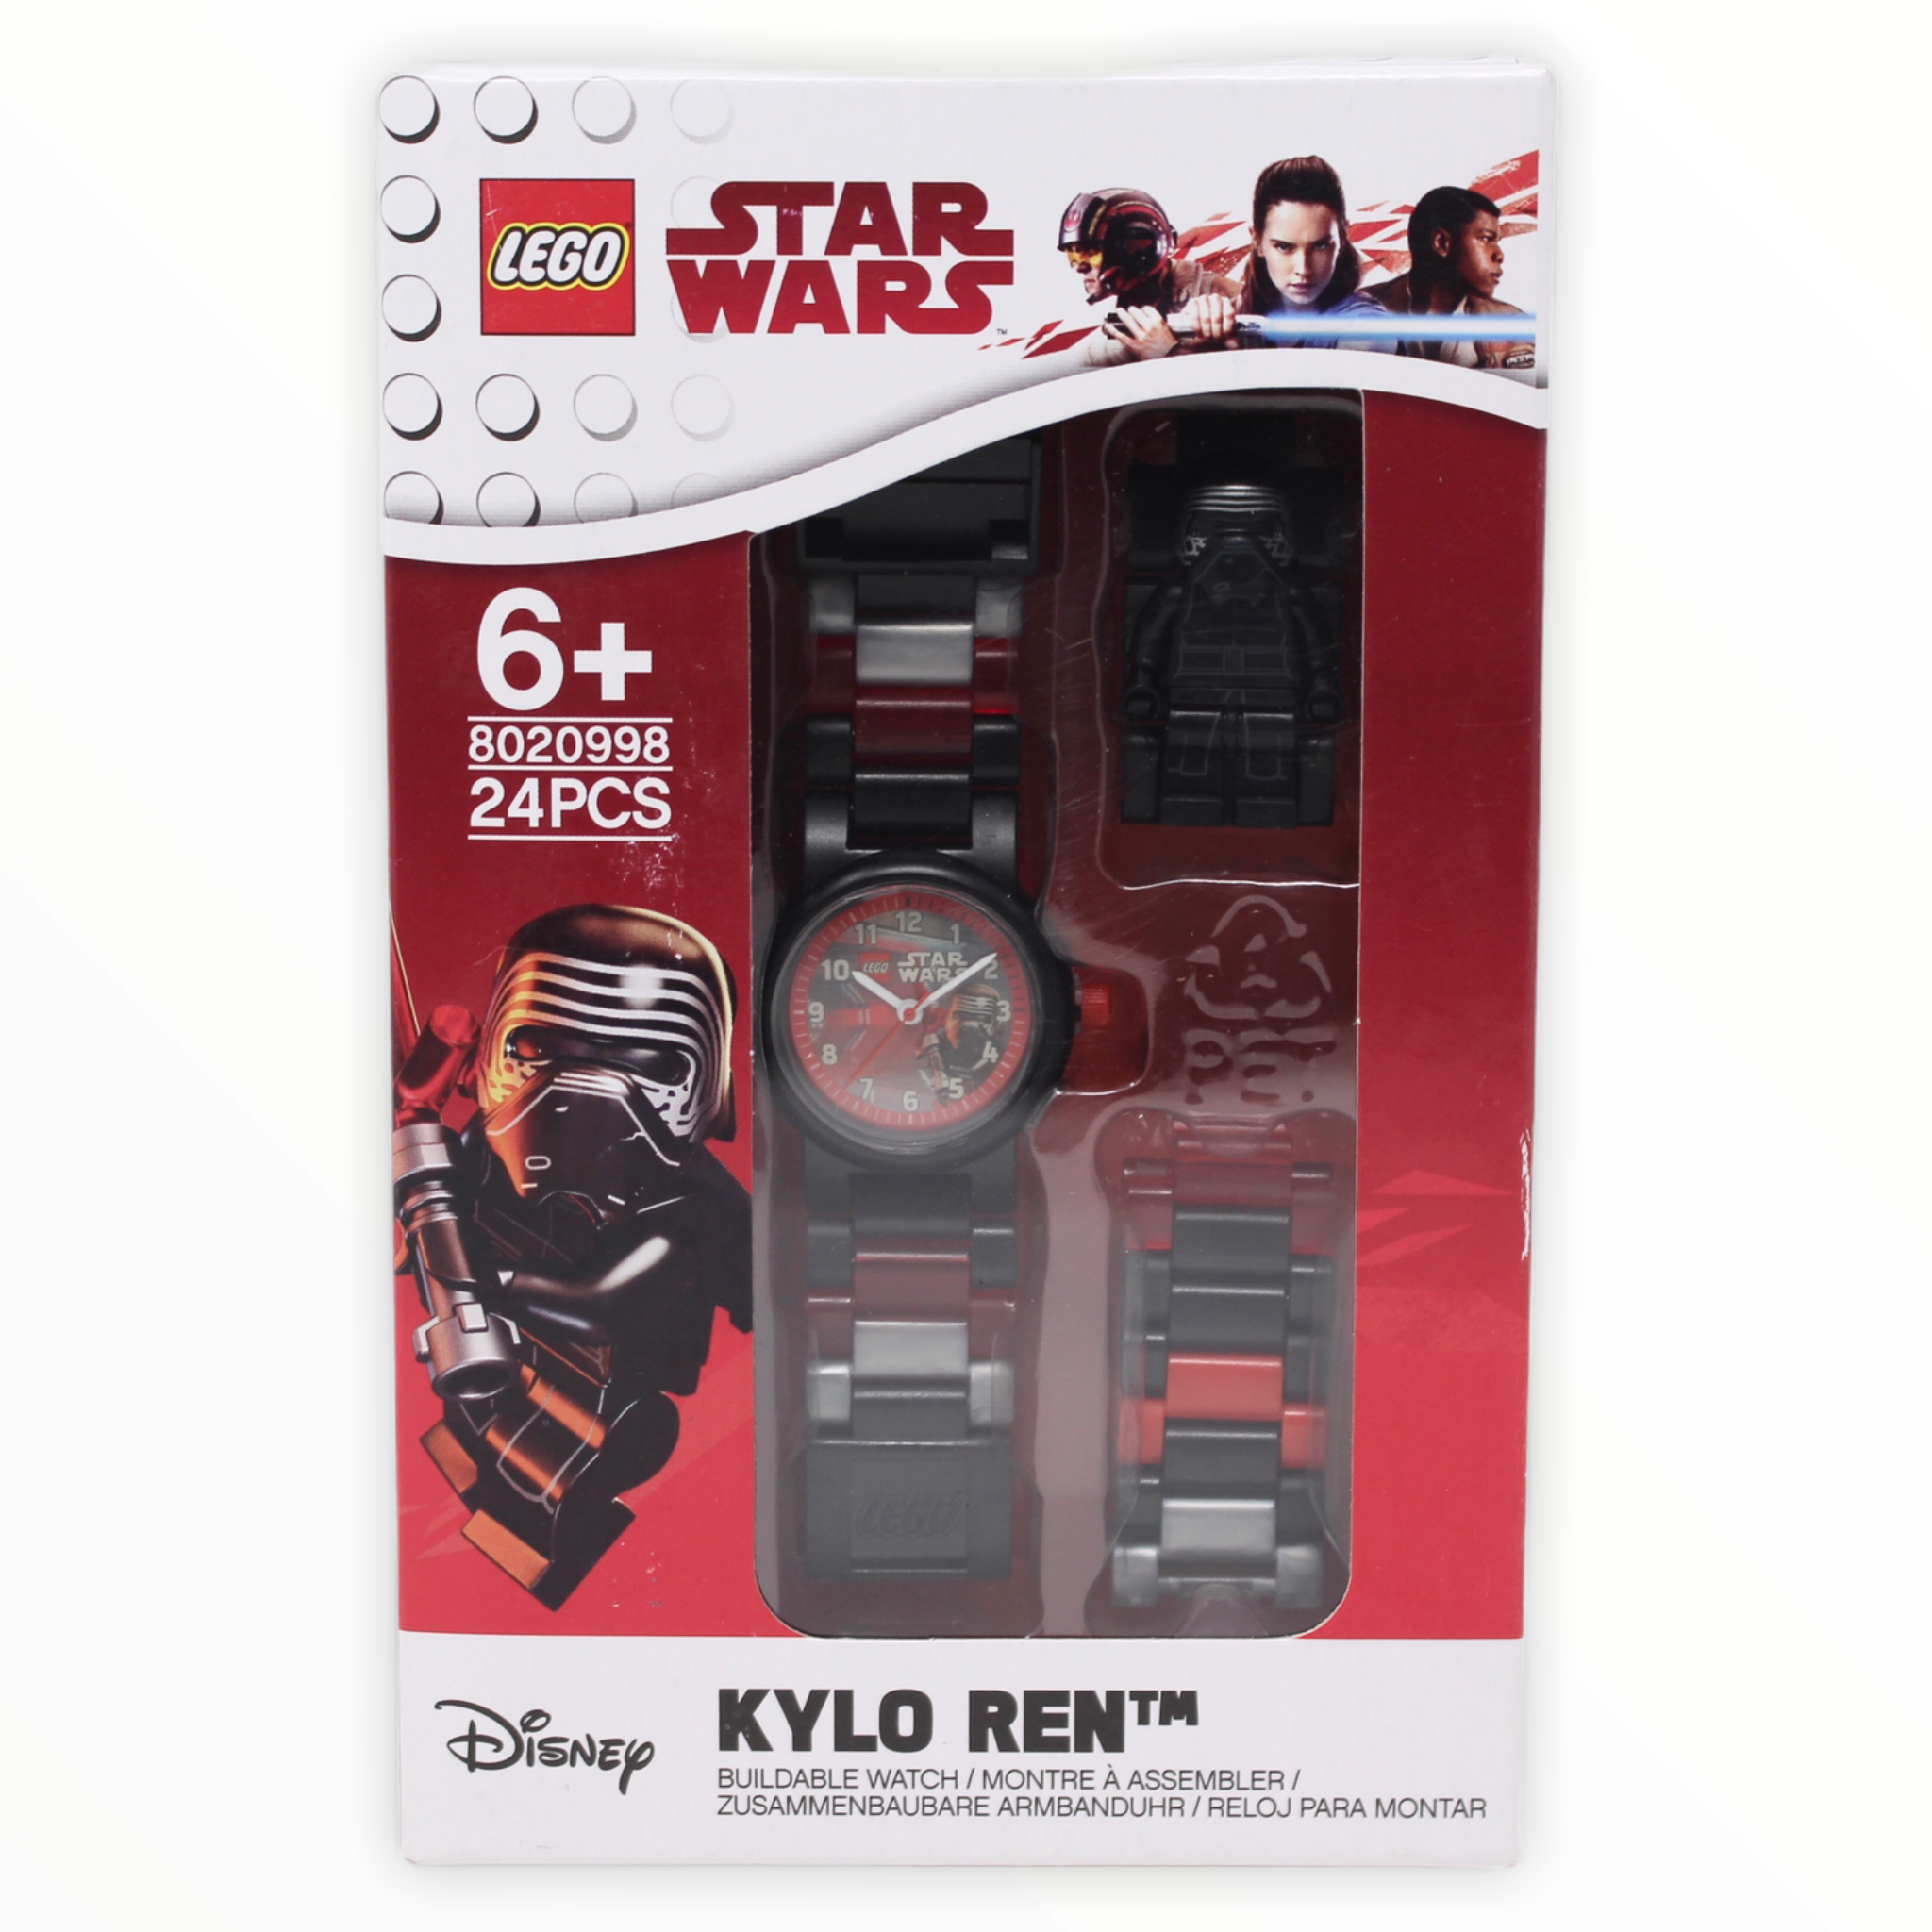 LEGO Star Wars Watch Set Kylo Ren 8020998